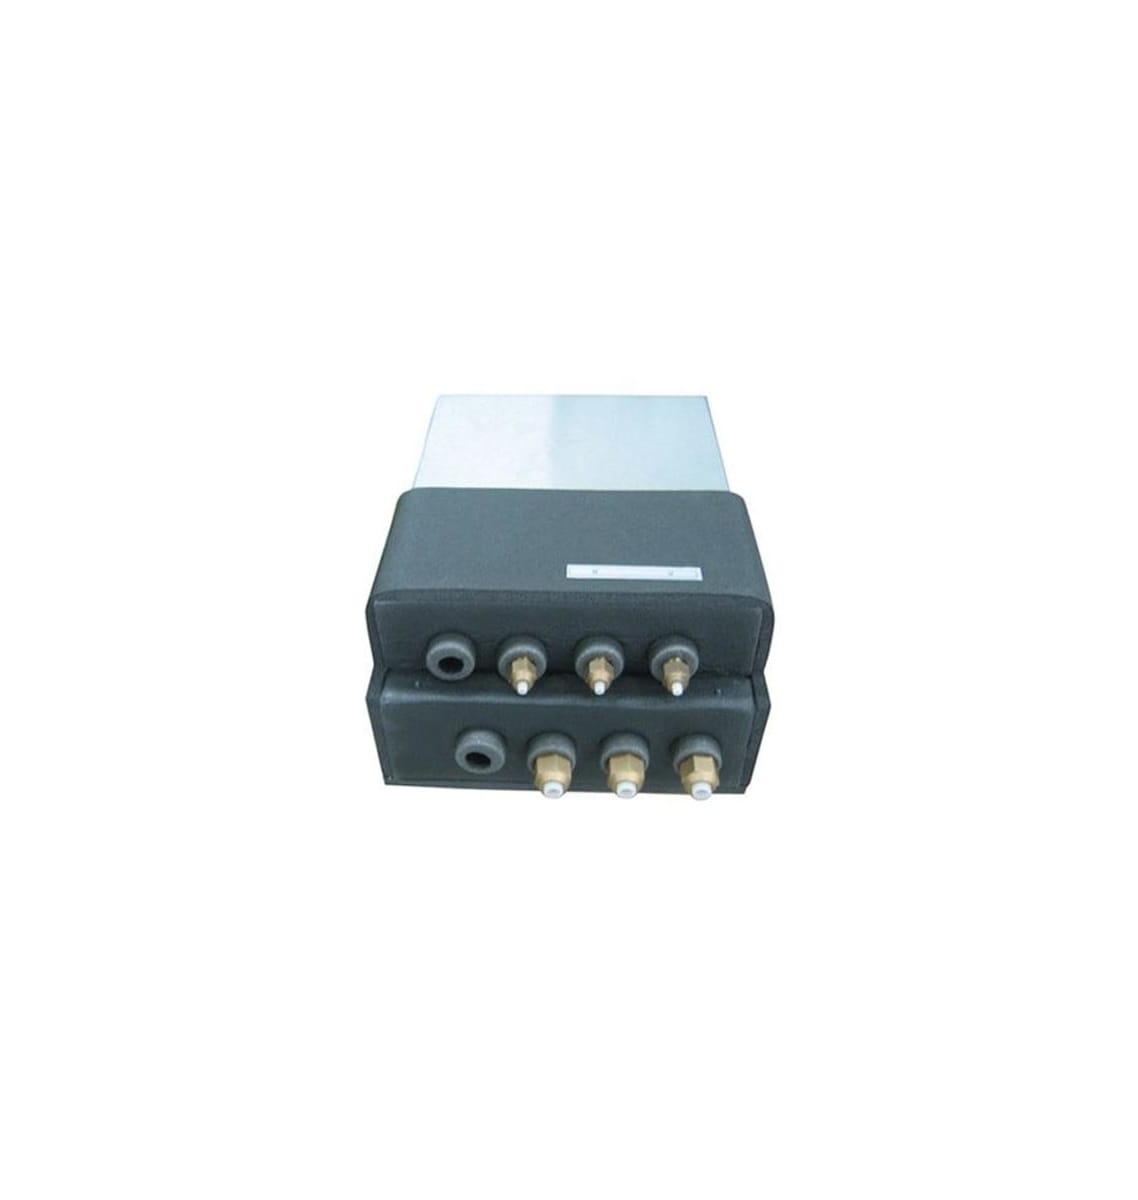 LG Heat Pump Mini Split Systems Cooling - L3L48D09121800